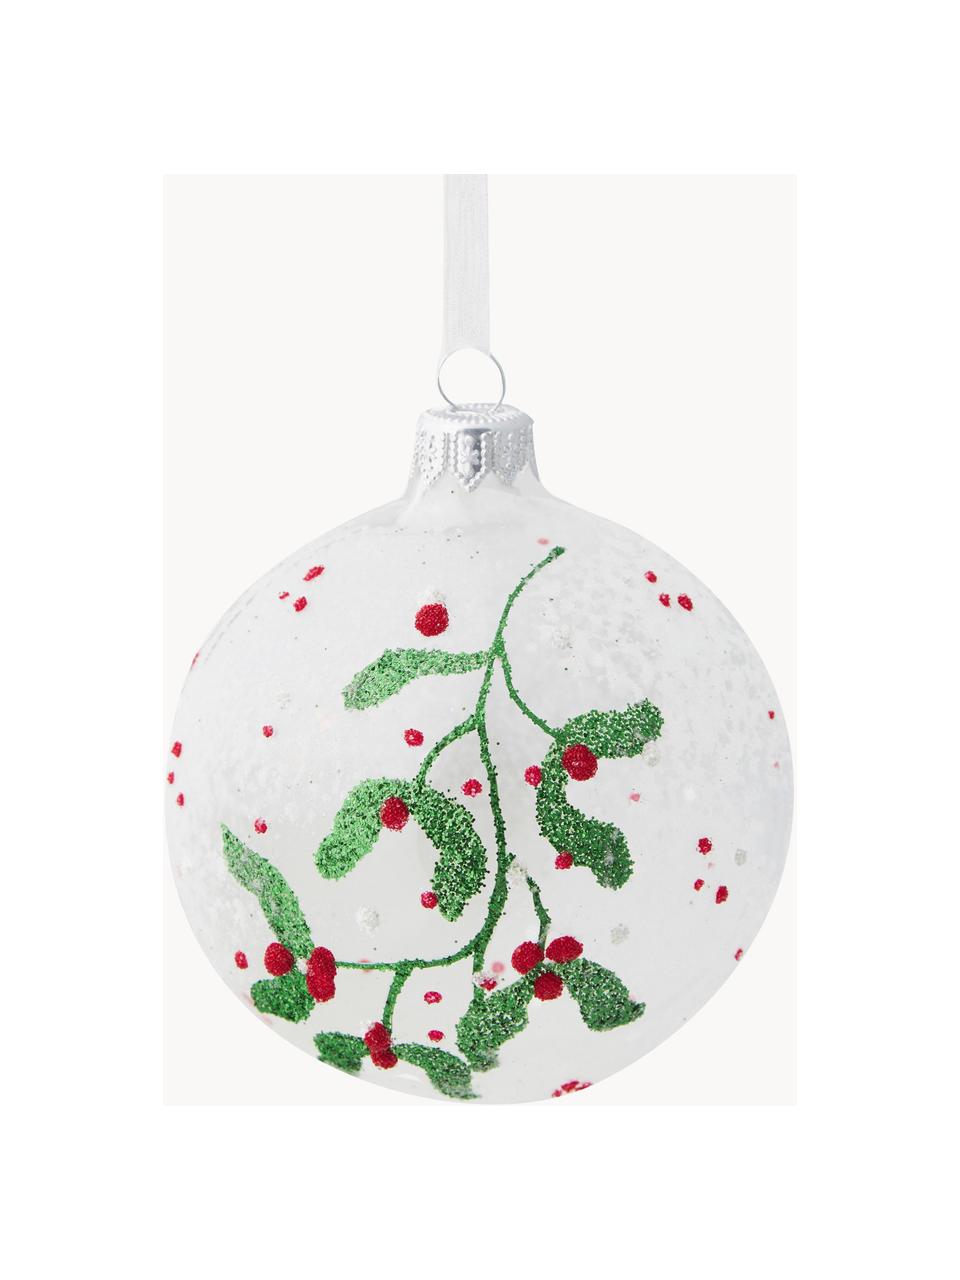 Mundgeblasene Weihnachtskugeln Berry, 6 Stück, Glas, Transparent, Grün, Rot, Weiß, Ø 8 cm